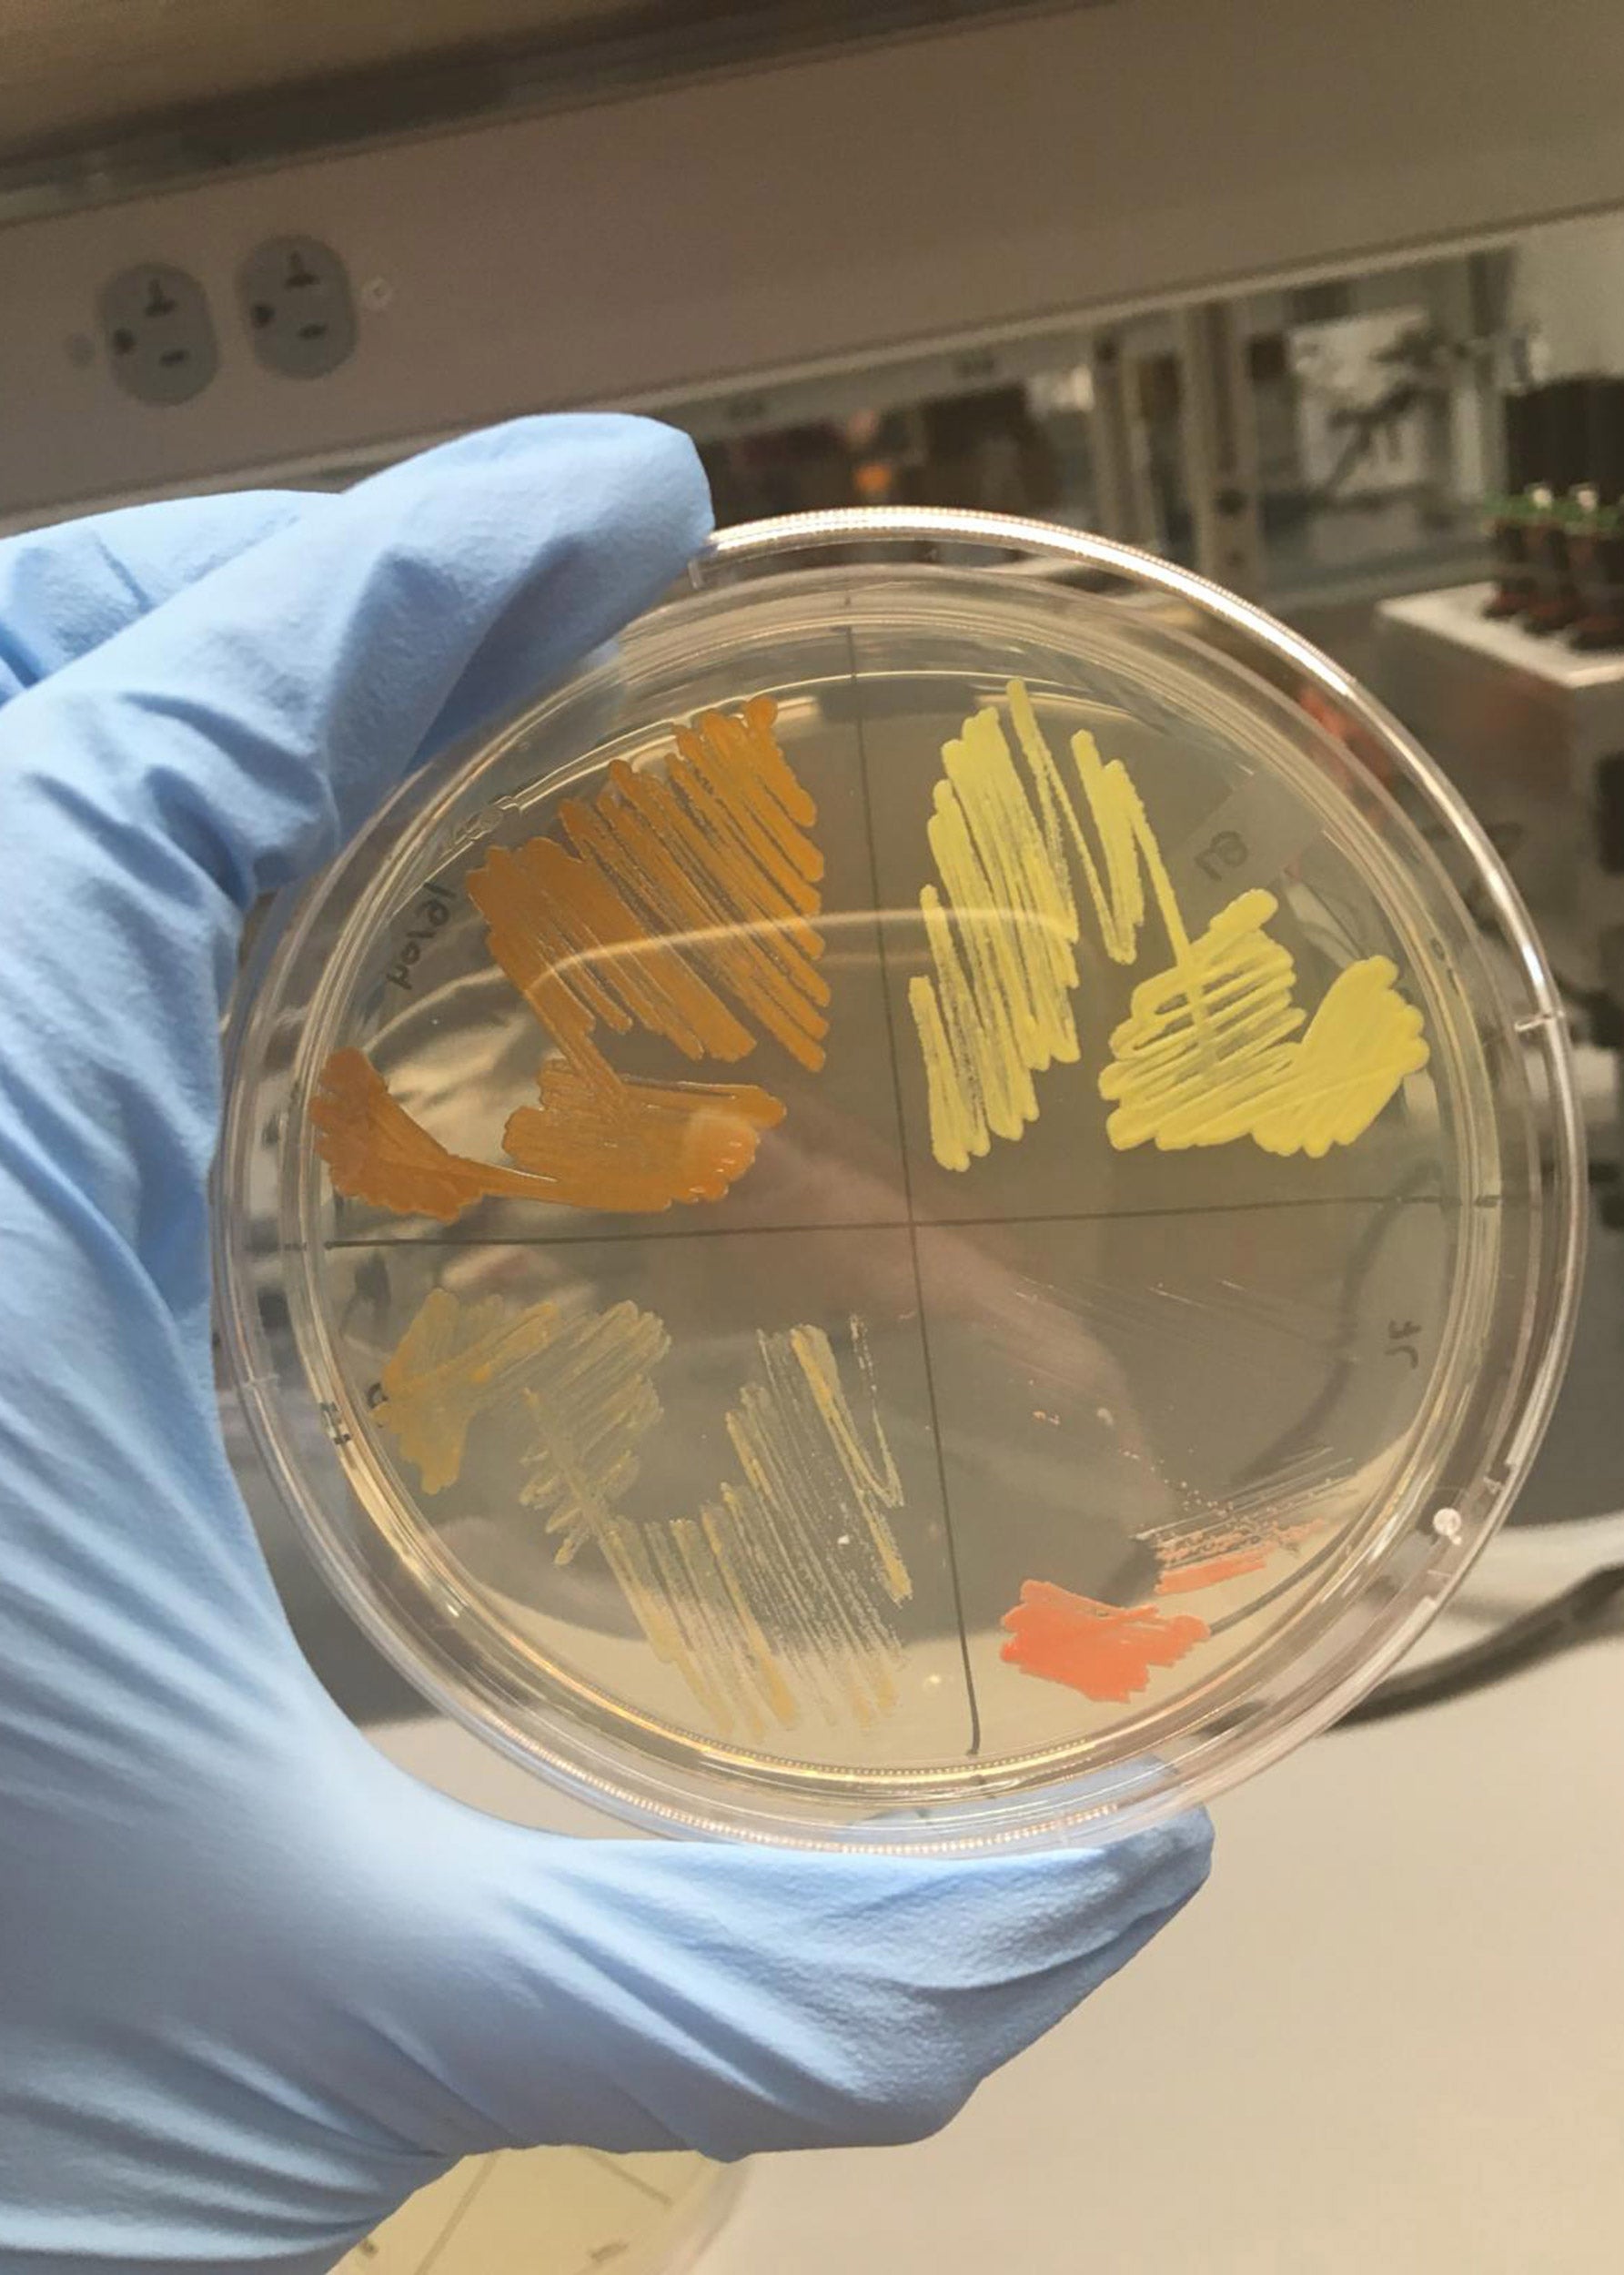 Samples of bacteria.